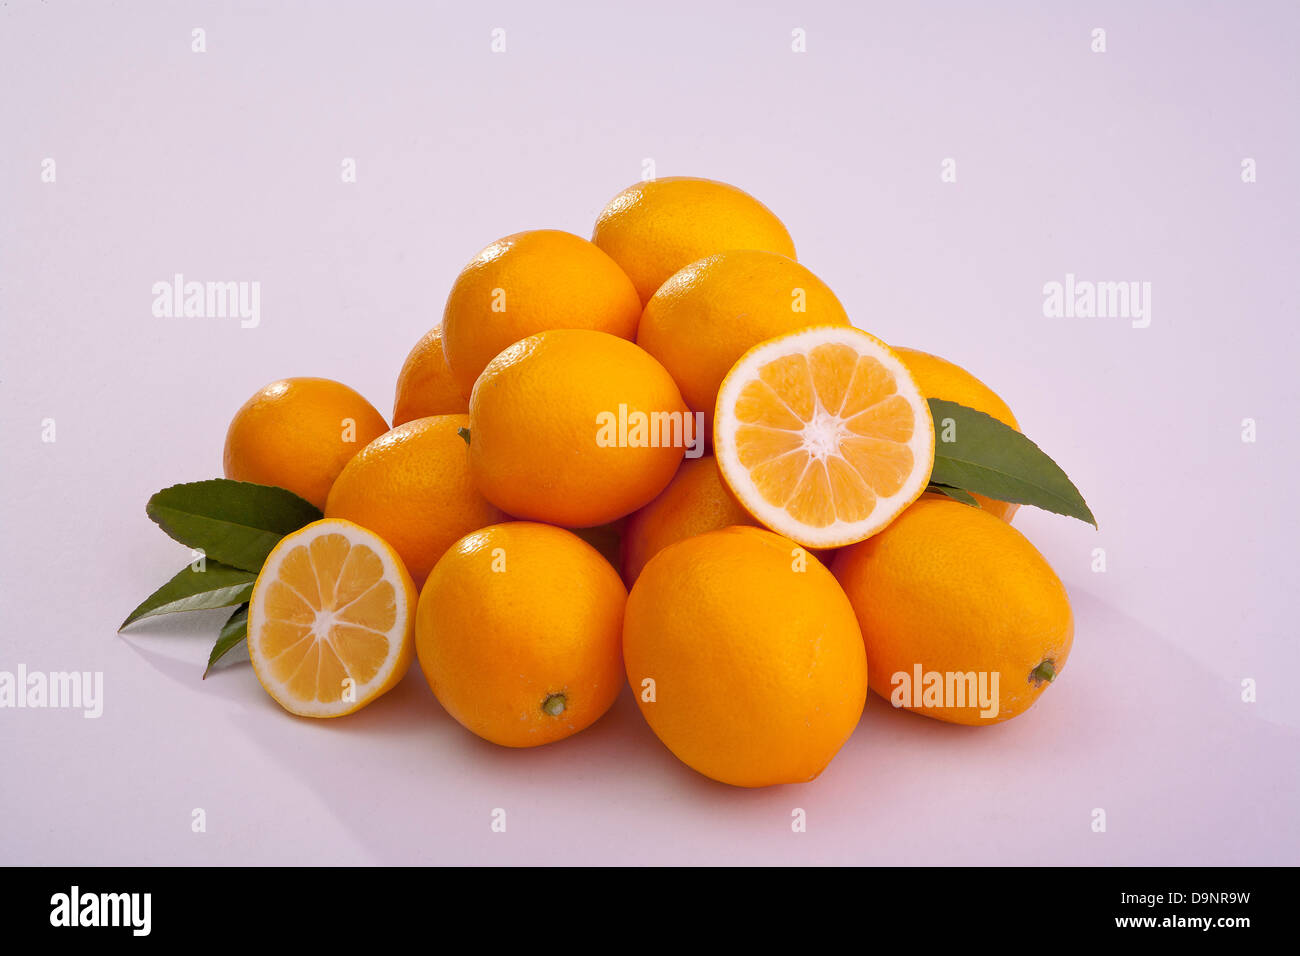 Grupo de limones cortados y todo Meyer limones agrios Foto de stock